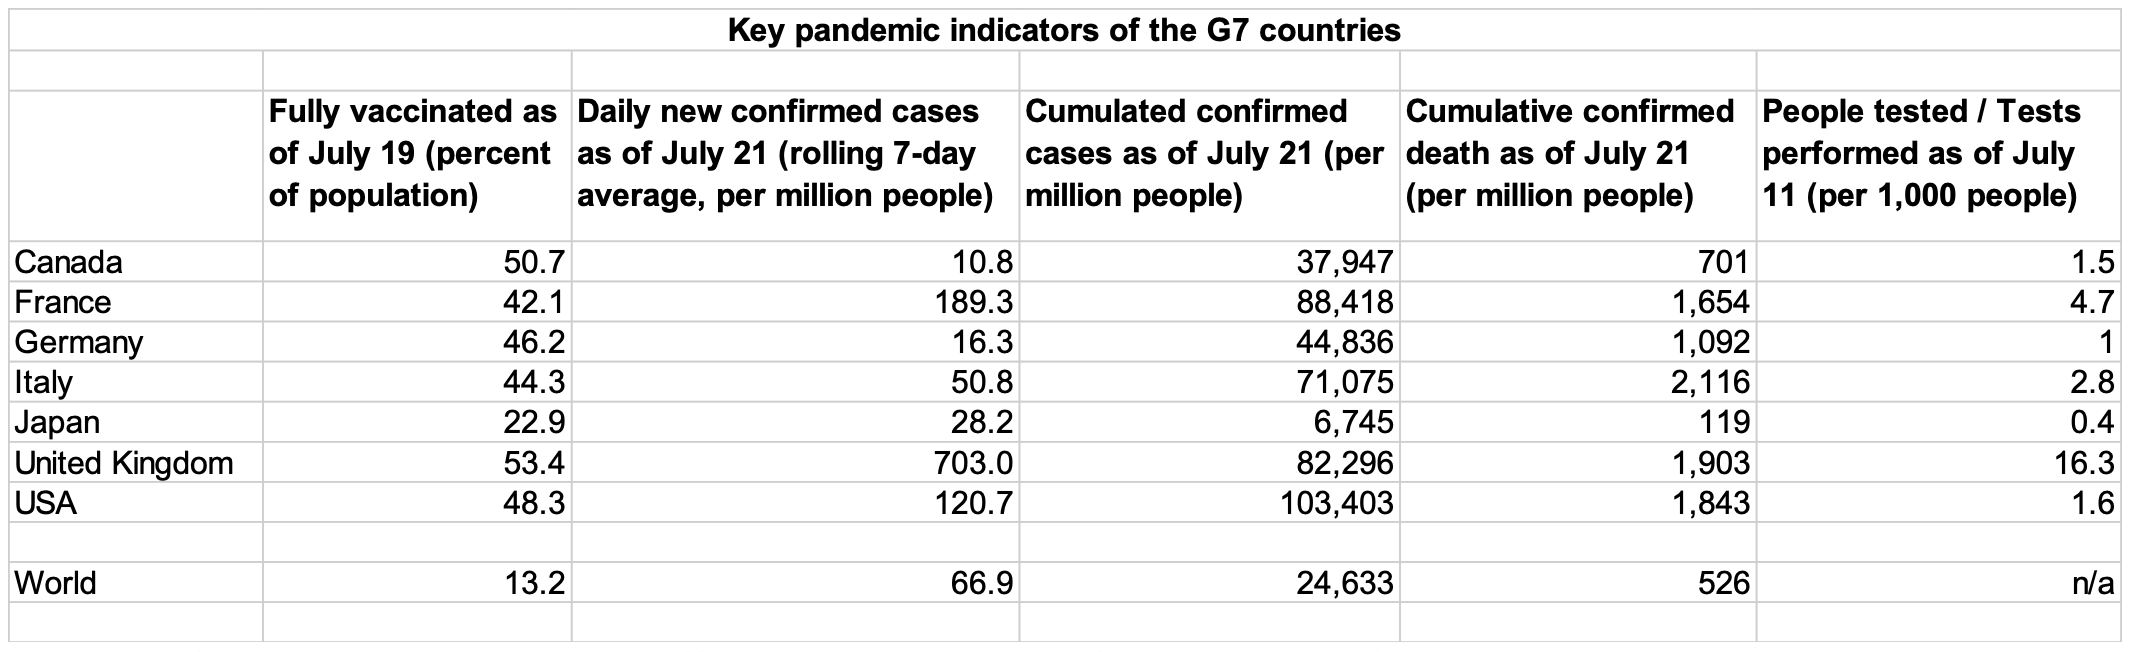 pandemic indicators